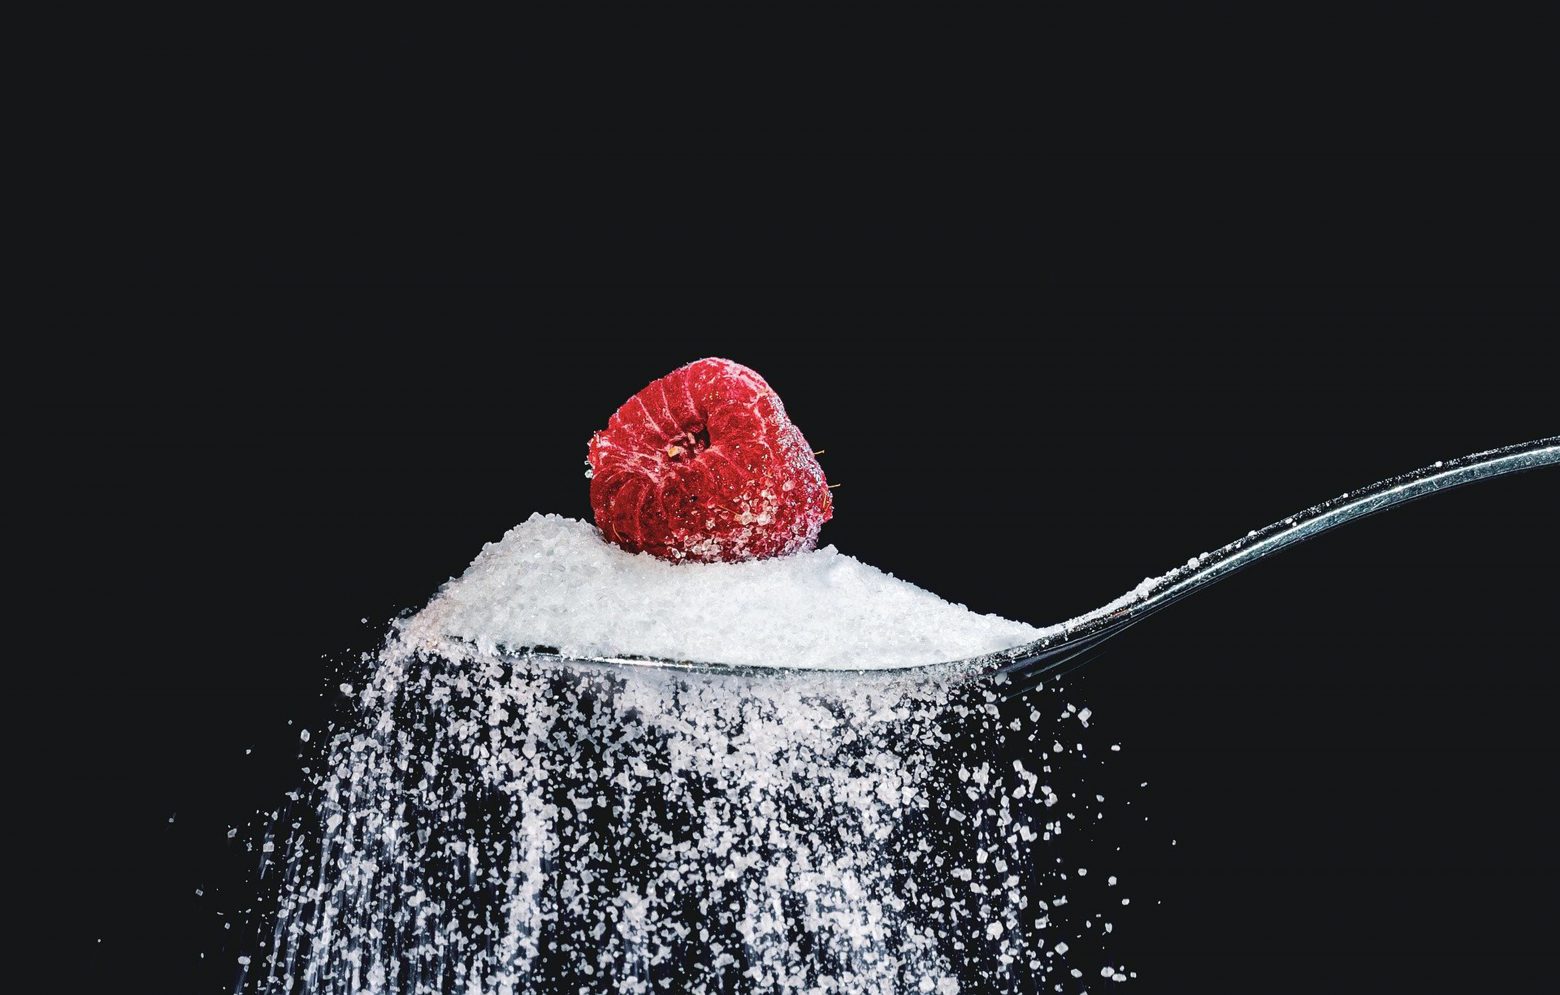 Τριάντα μέρες χωρίς ζάχαρη - Το challenge που πρέπει να γίνει μόνιμη συνήθεια